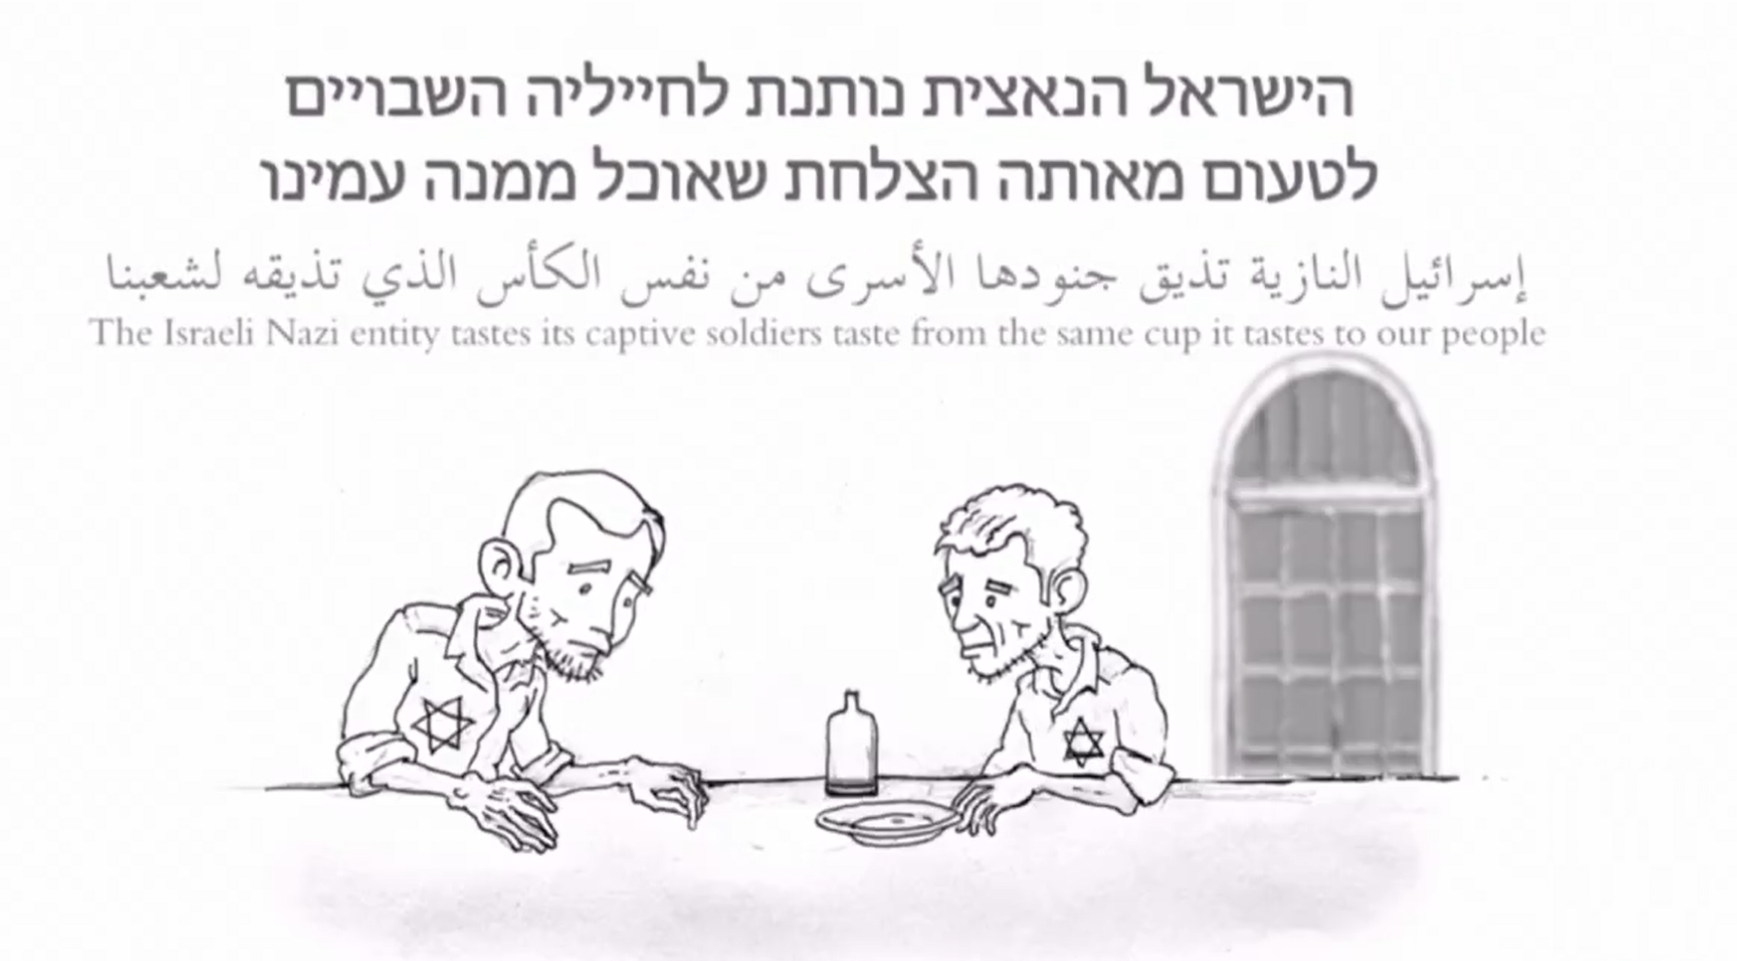 فيديو جديد للقسام عن أسرى الاحتلال يثير غضب الإسرائيليين ضد نتنياهو